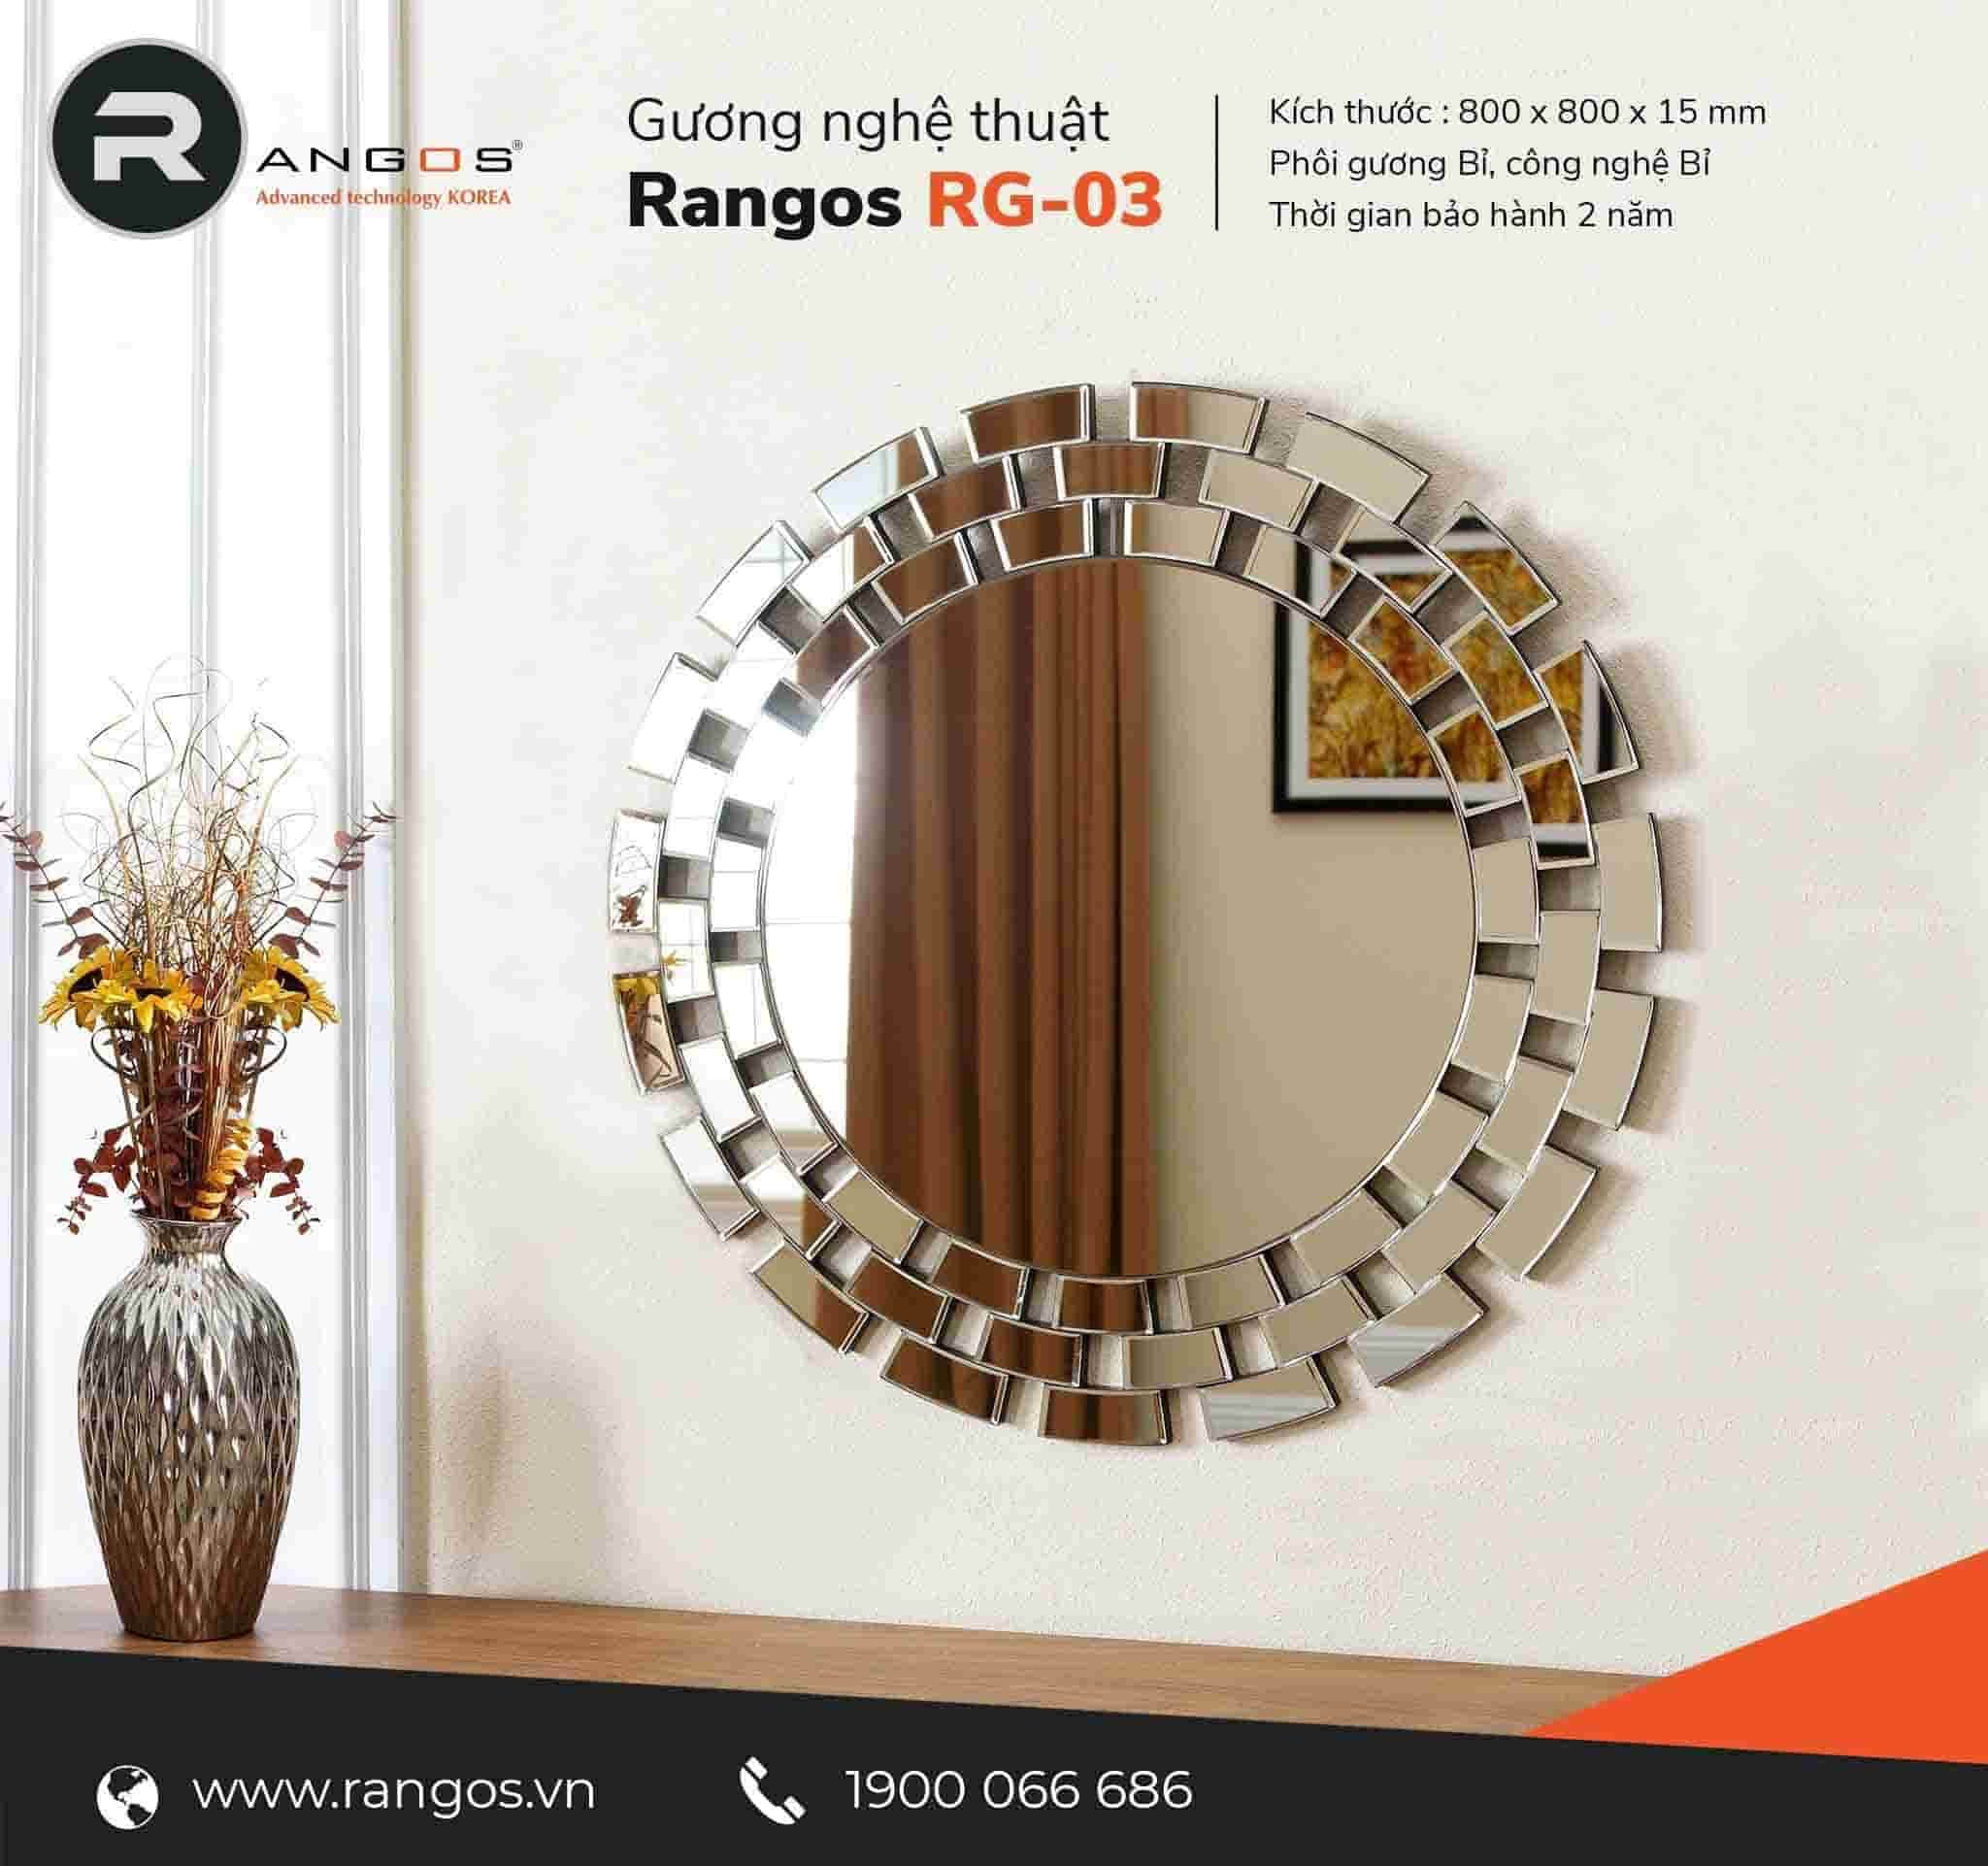 Gương nghệ thuật Rangos RG-DC03